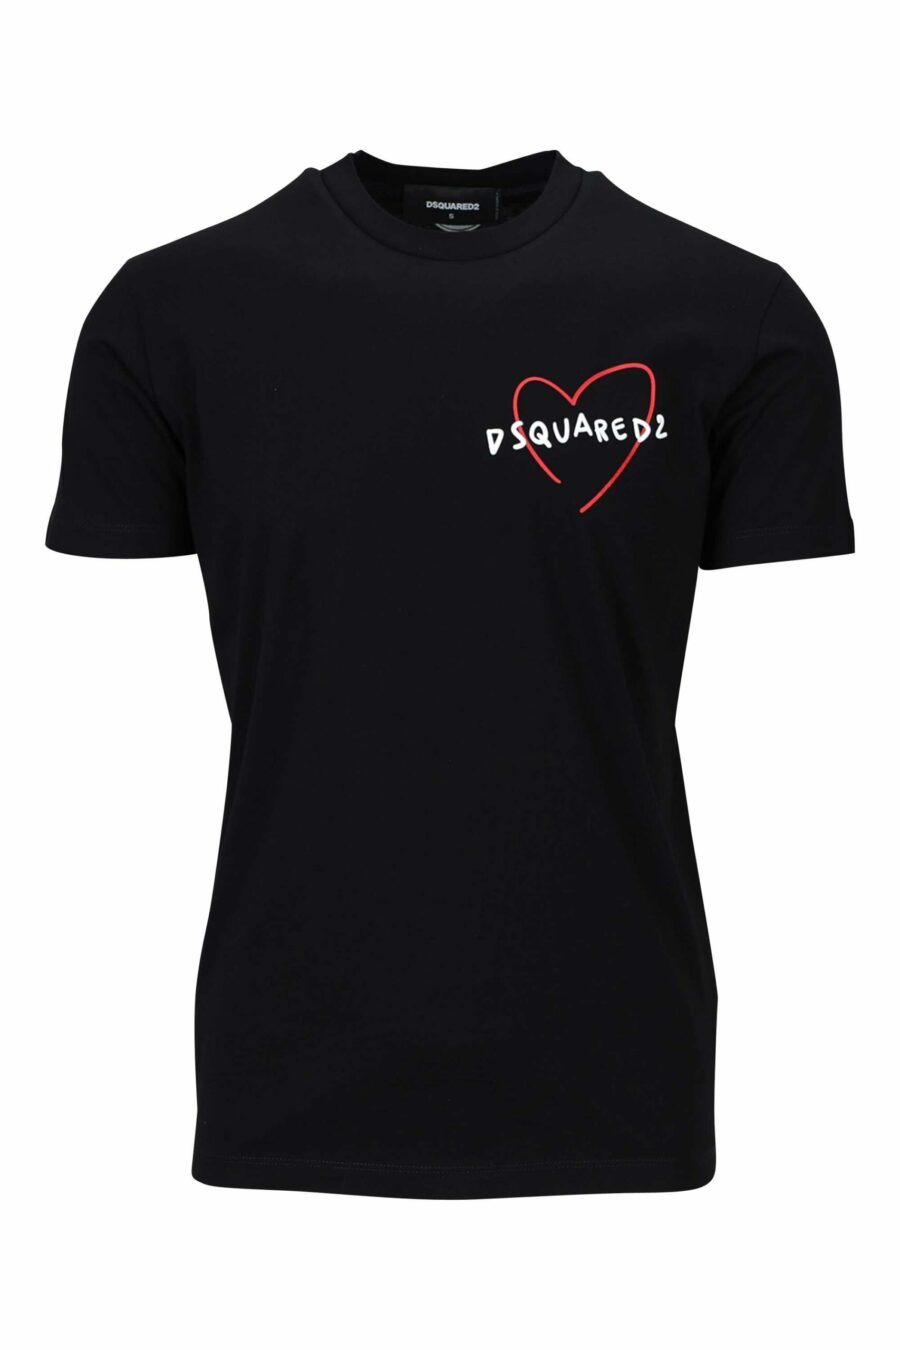 Camiseta negra con minilogo "doodle" corazón - 8052134946312 scaled